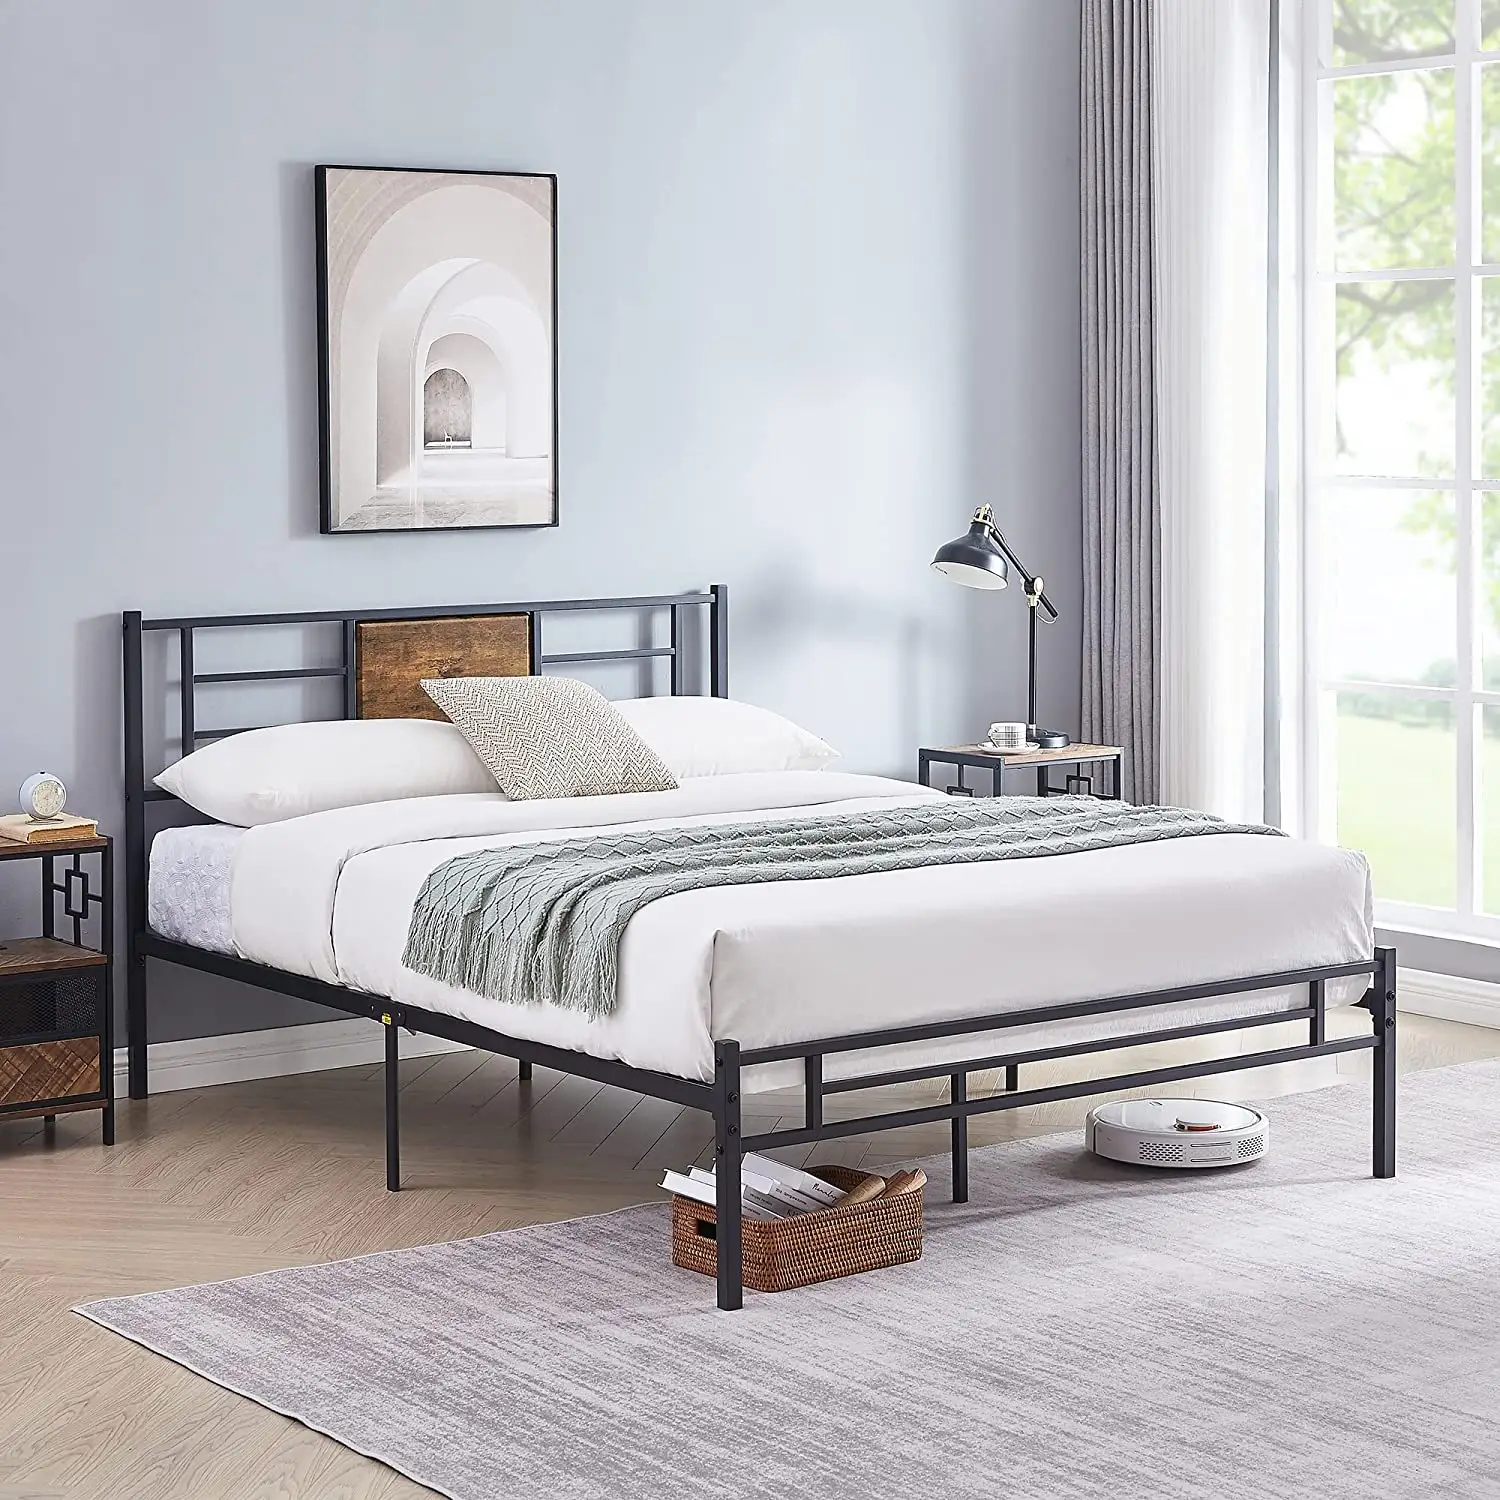 Cadre de lit simple JUANA sortie d'usine meubles de chambre à coucher modernes lits en métal pour chambre à coucher